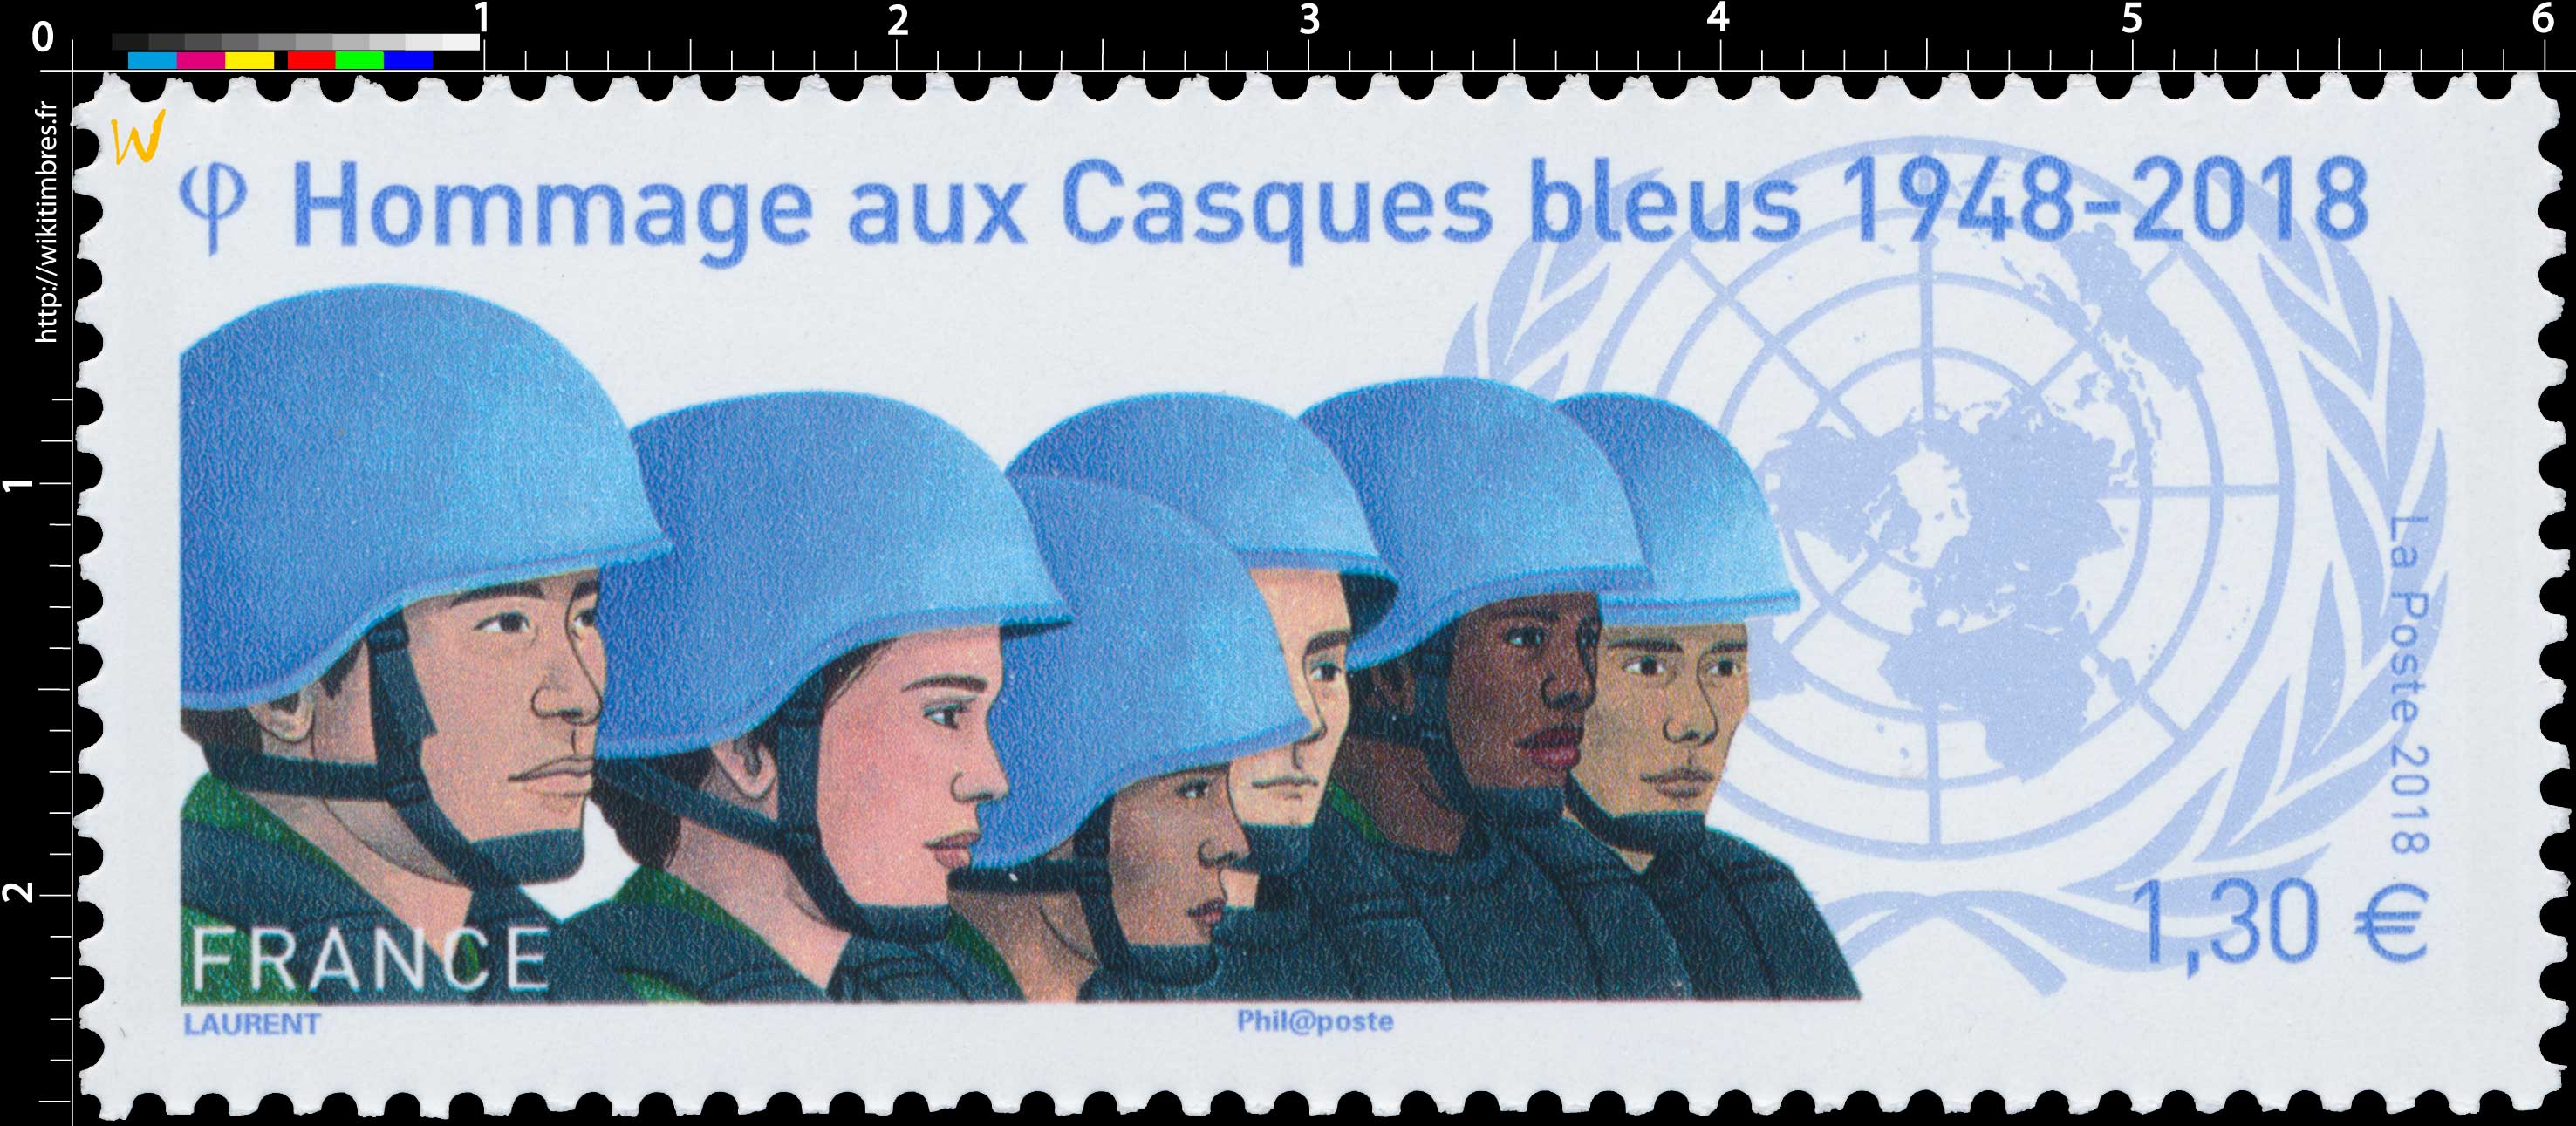 2018 Hommage aux Casques bleus 1948-2018